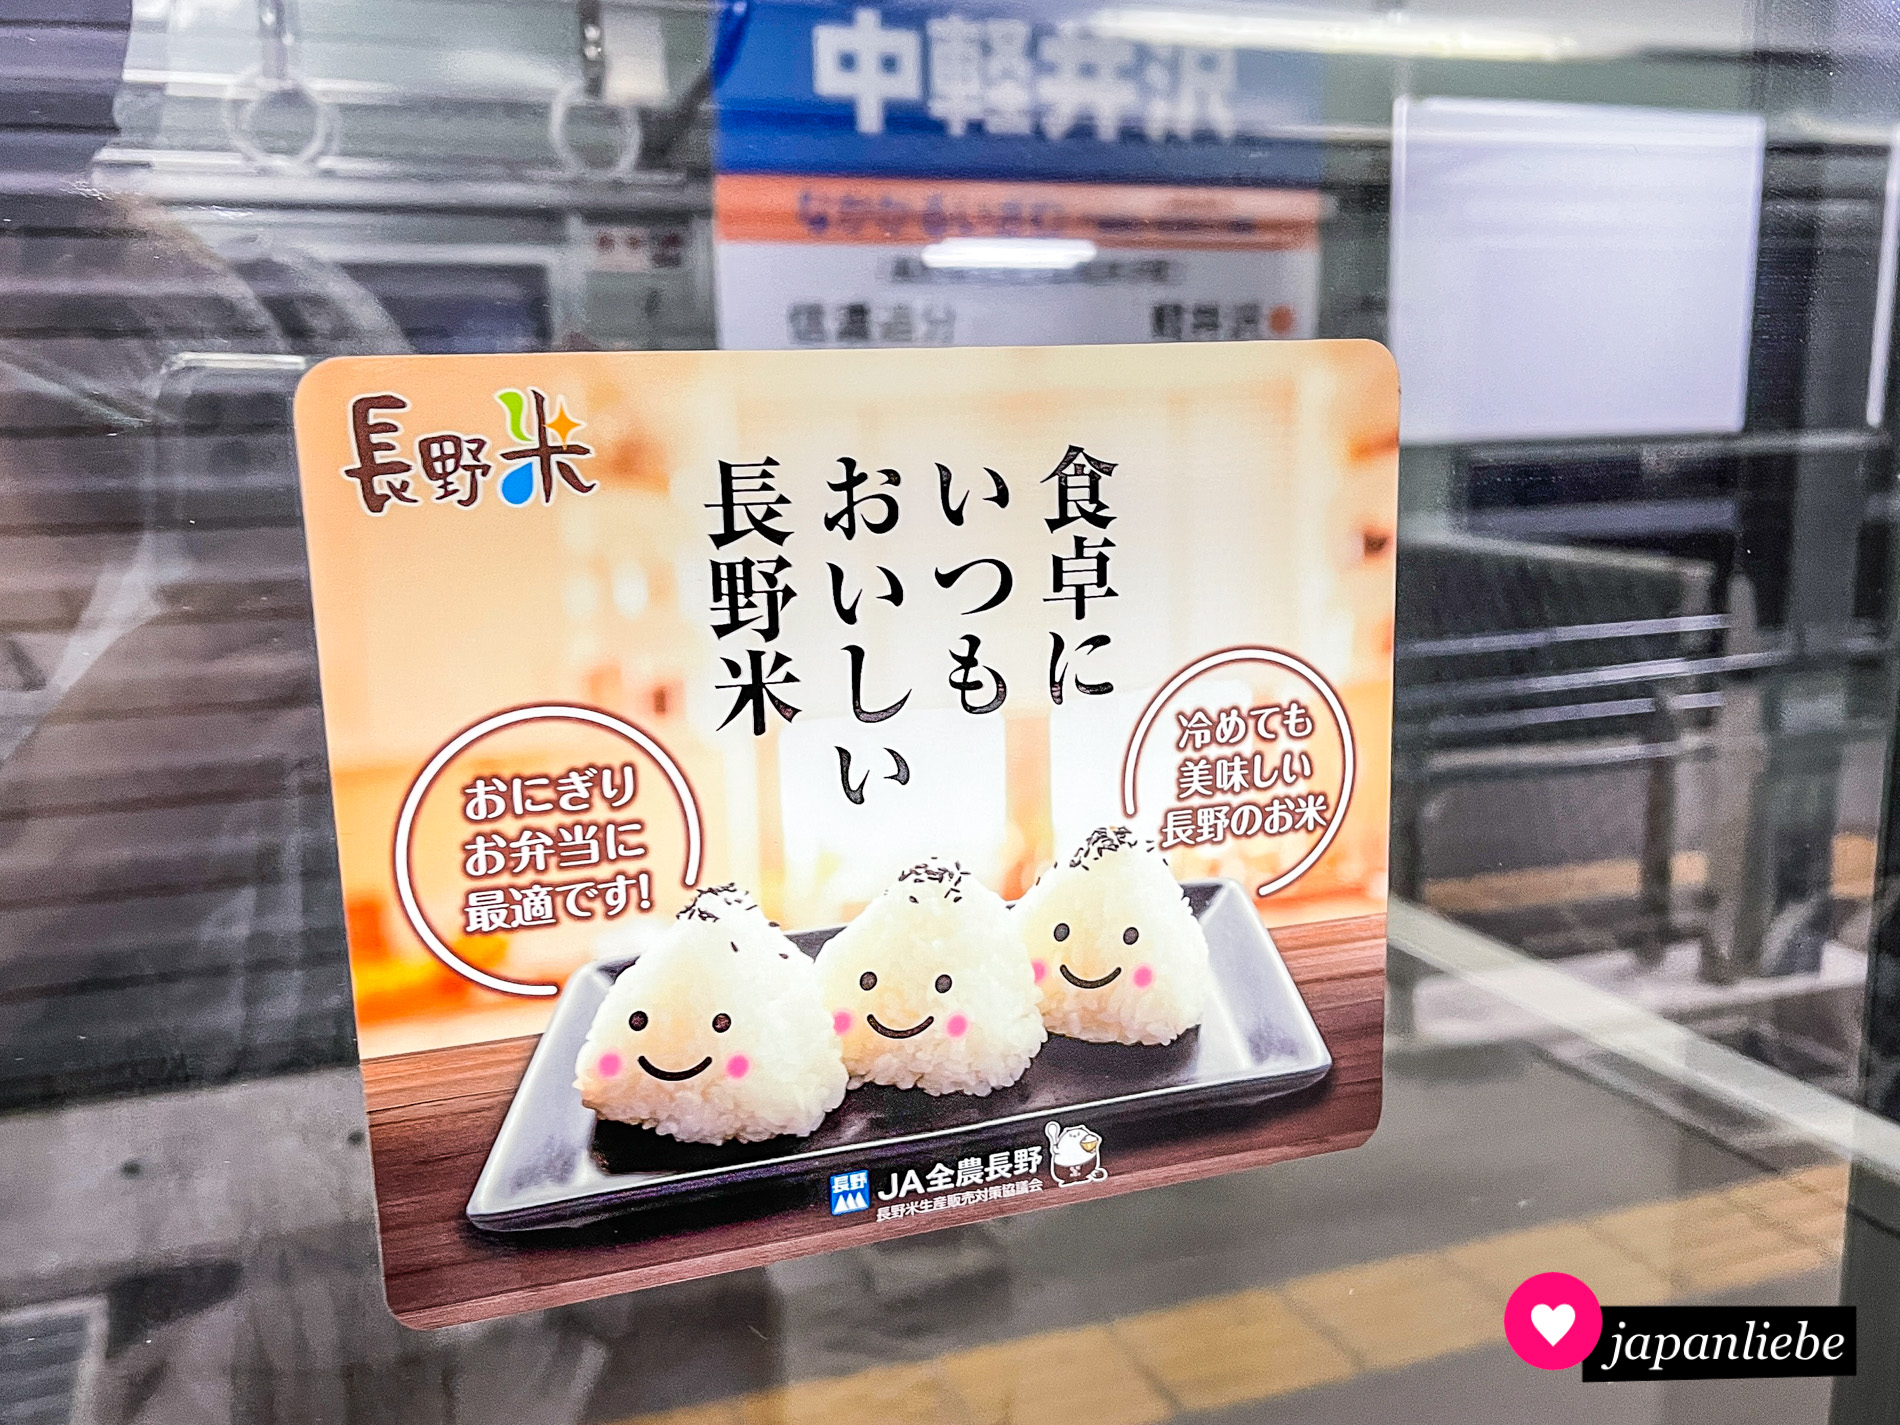 Ein Werbeaufkleber in der U-Bahn zeigt drei Reisbällchen mit lächelnden Gesichtern.